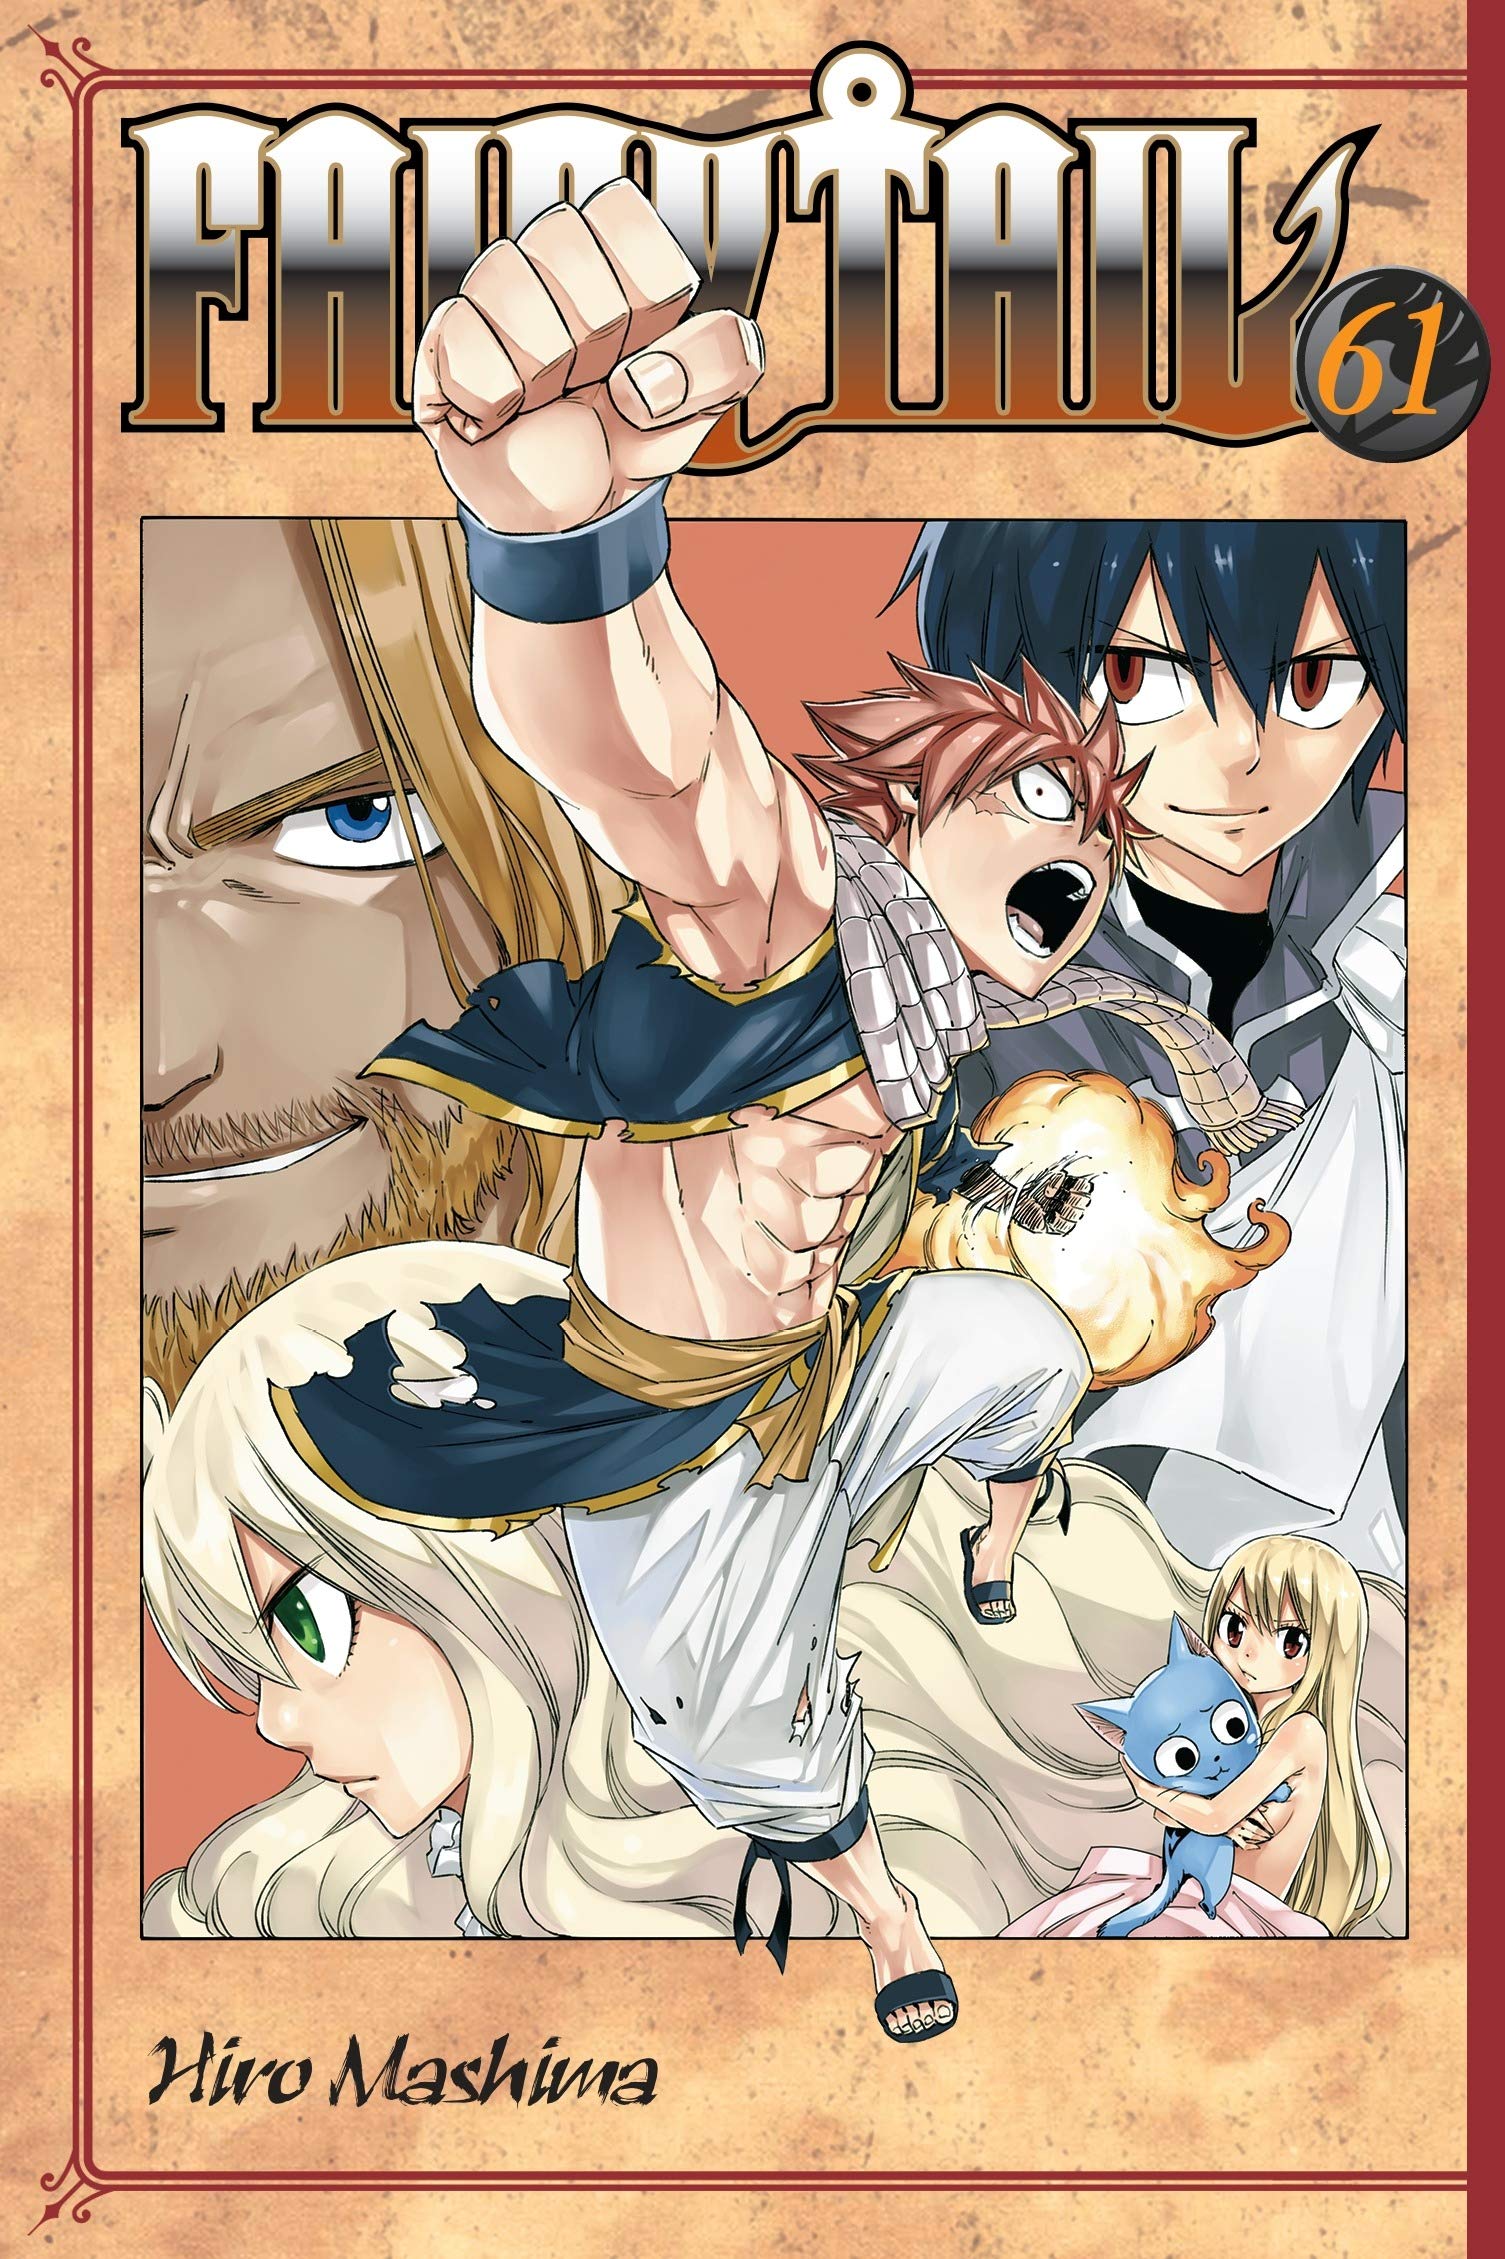 Fairy Tail - Volume 61